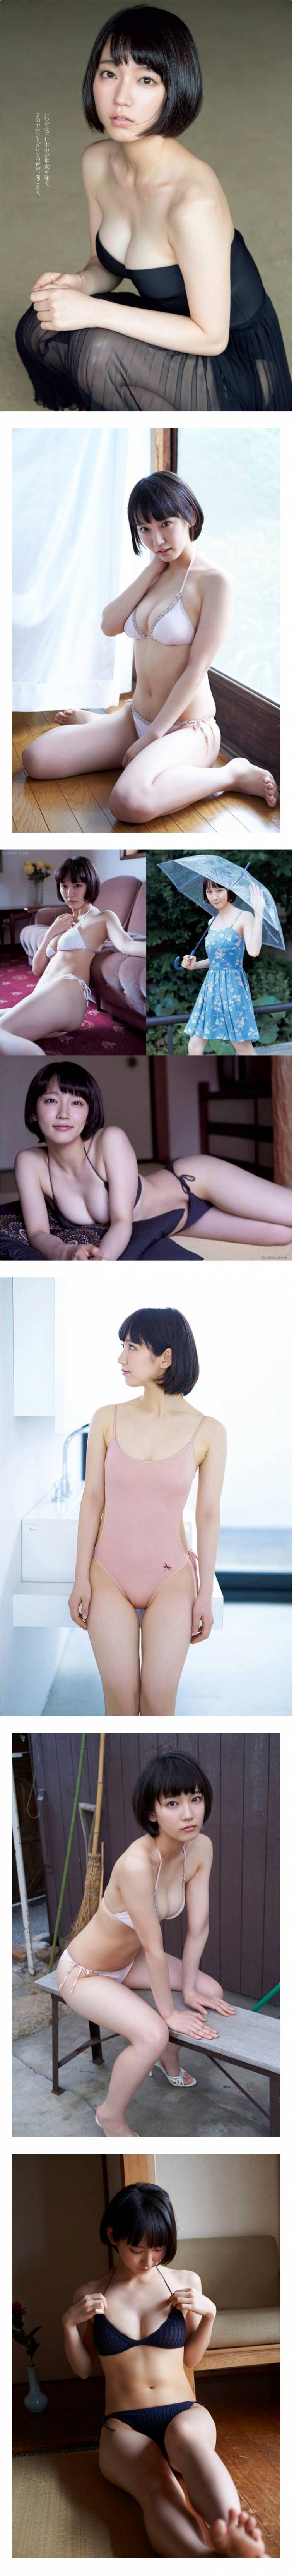 일본 배우 그라비아 화보 - 요시오카 리호